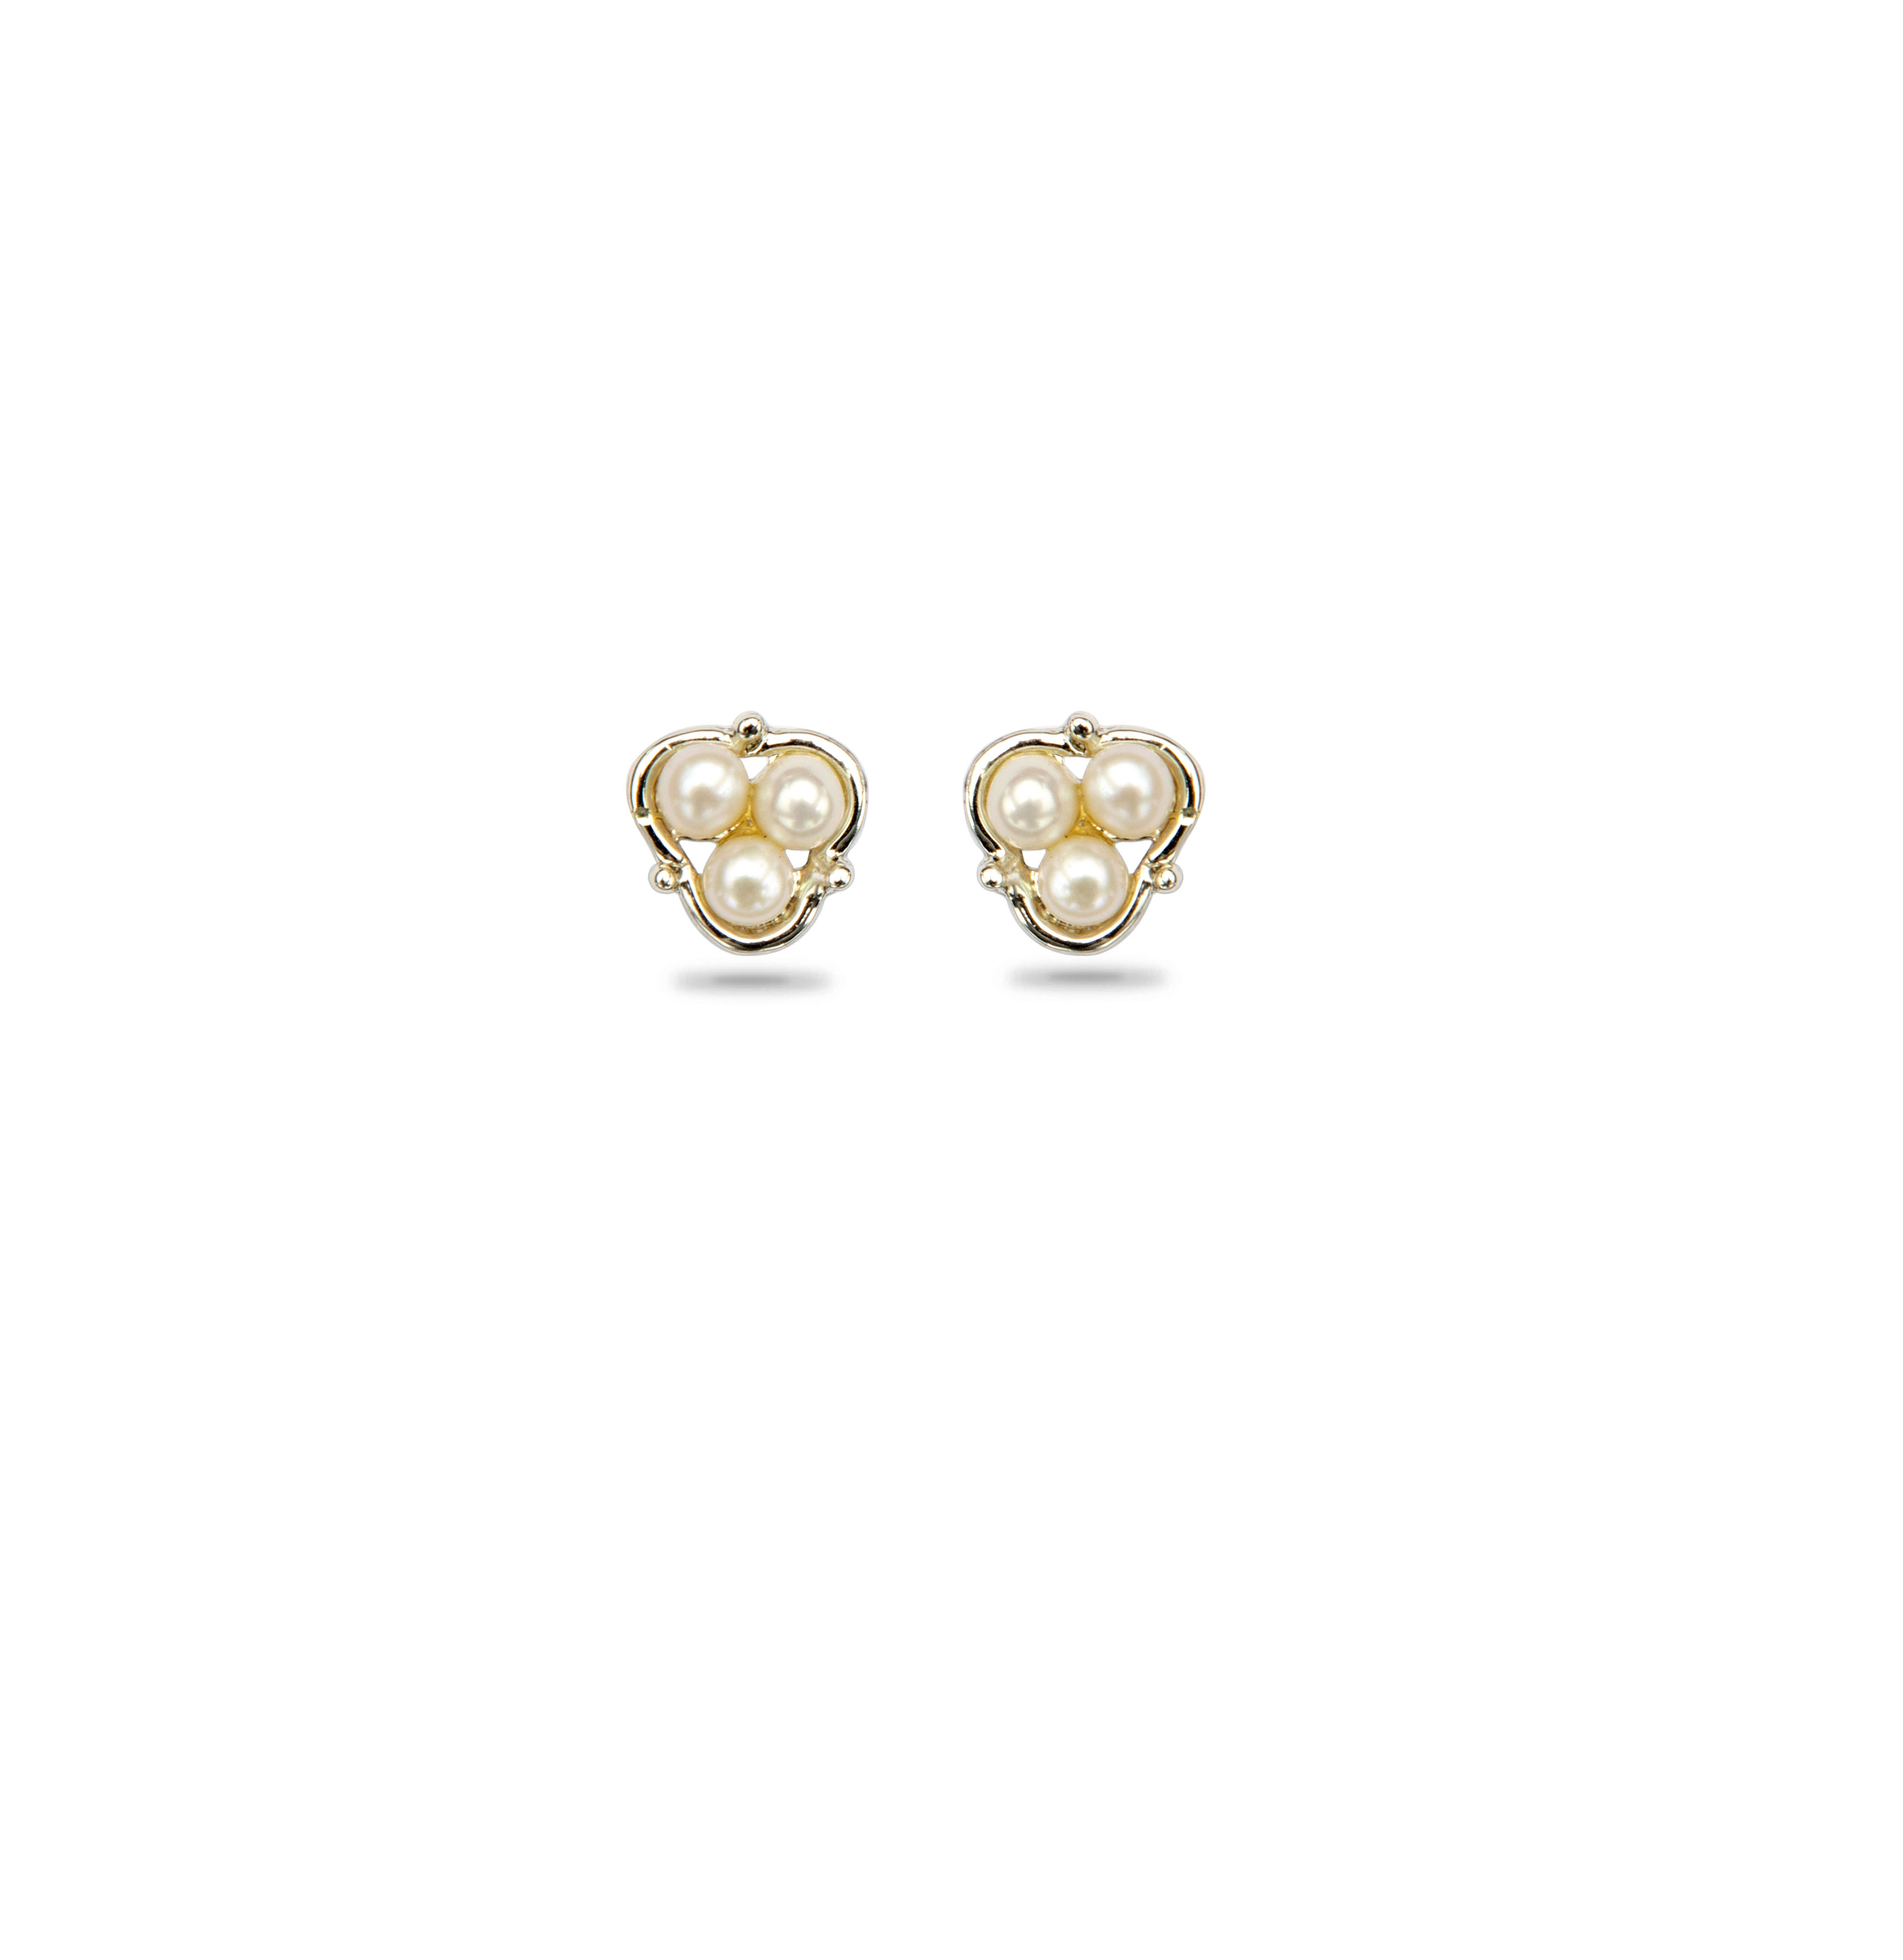 Buy Silver Pearl Earrings | Darpan Mangatrai Online | Mangatrai Pearls ...